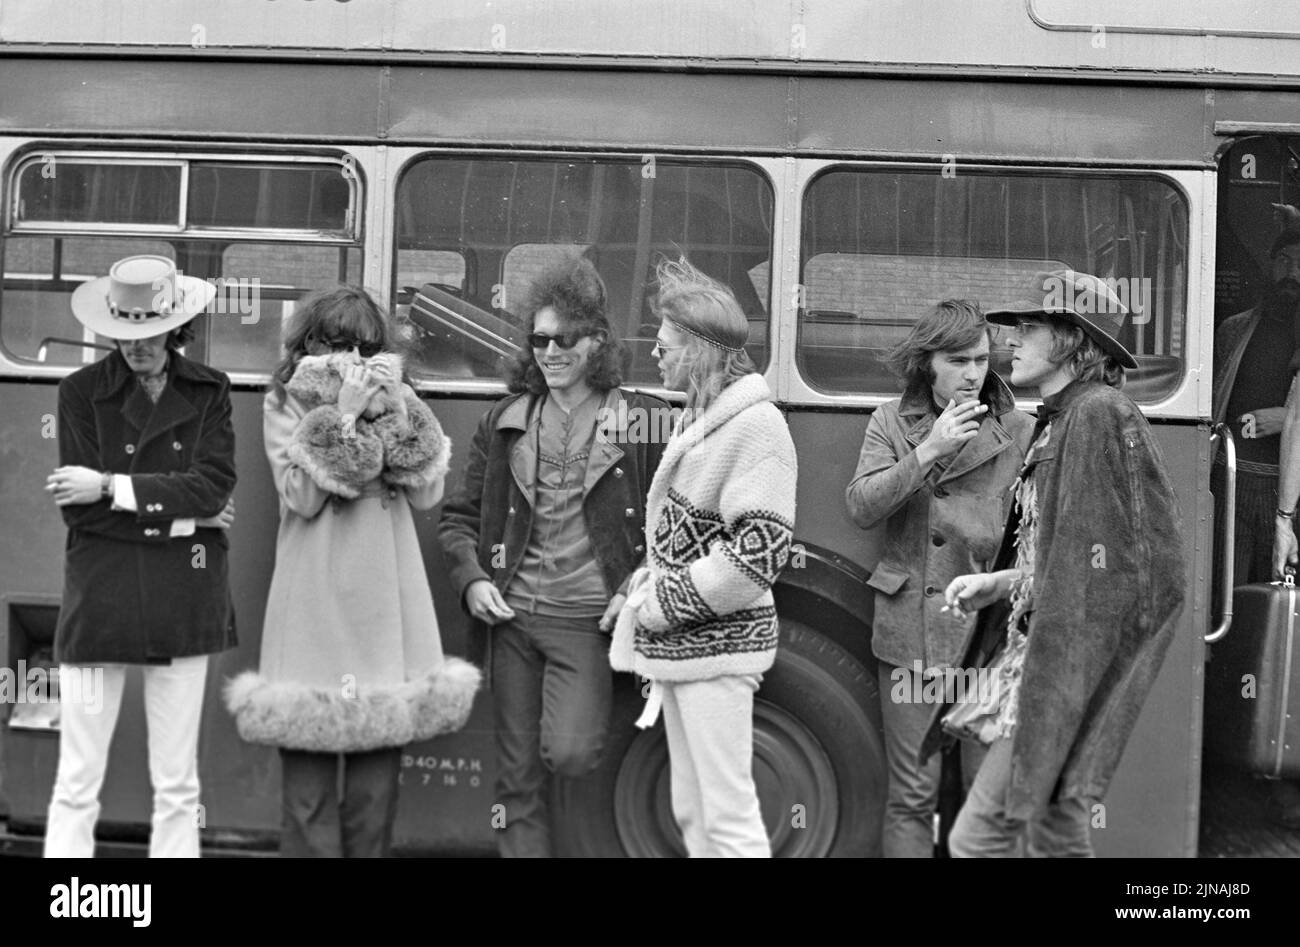 GROUPE de rock américain JEFFERSON AIRPLANE lors de leur voyage au concert malin du Bath Festival en juin 1970 Banque D'Images